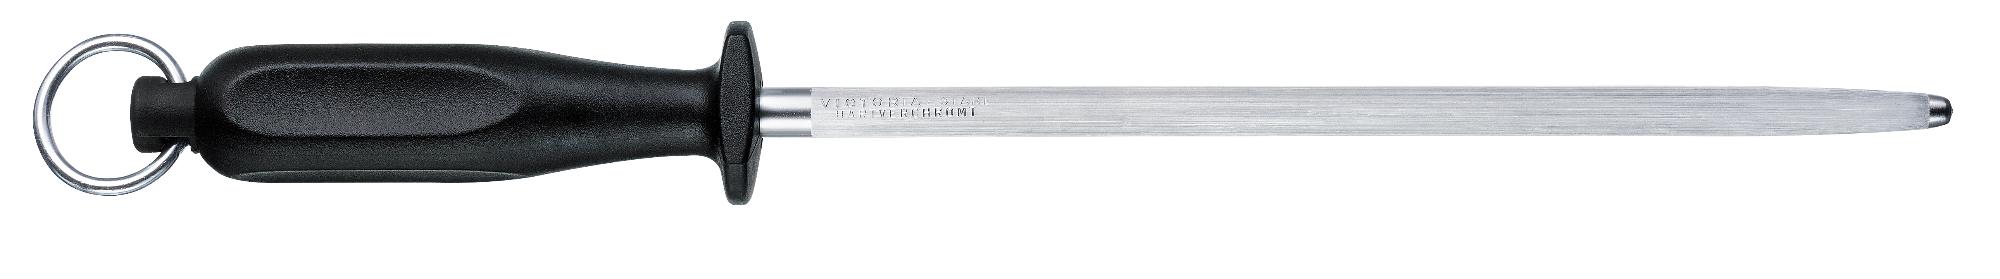 Fibrox steel sharpener, round, 23 cm - black